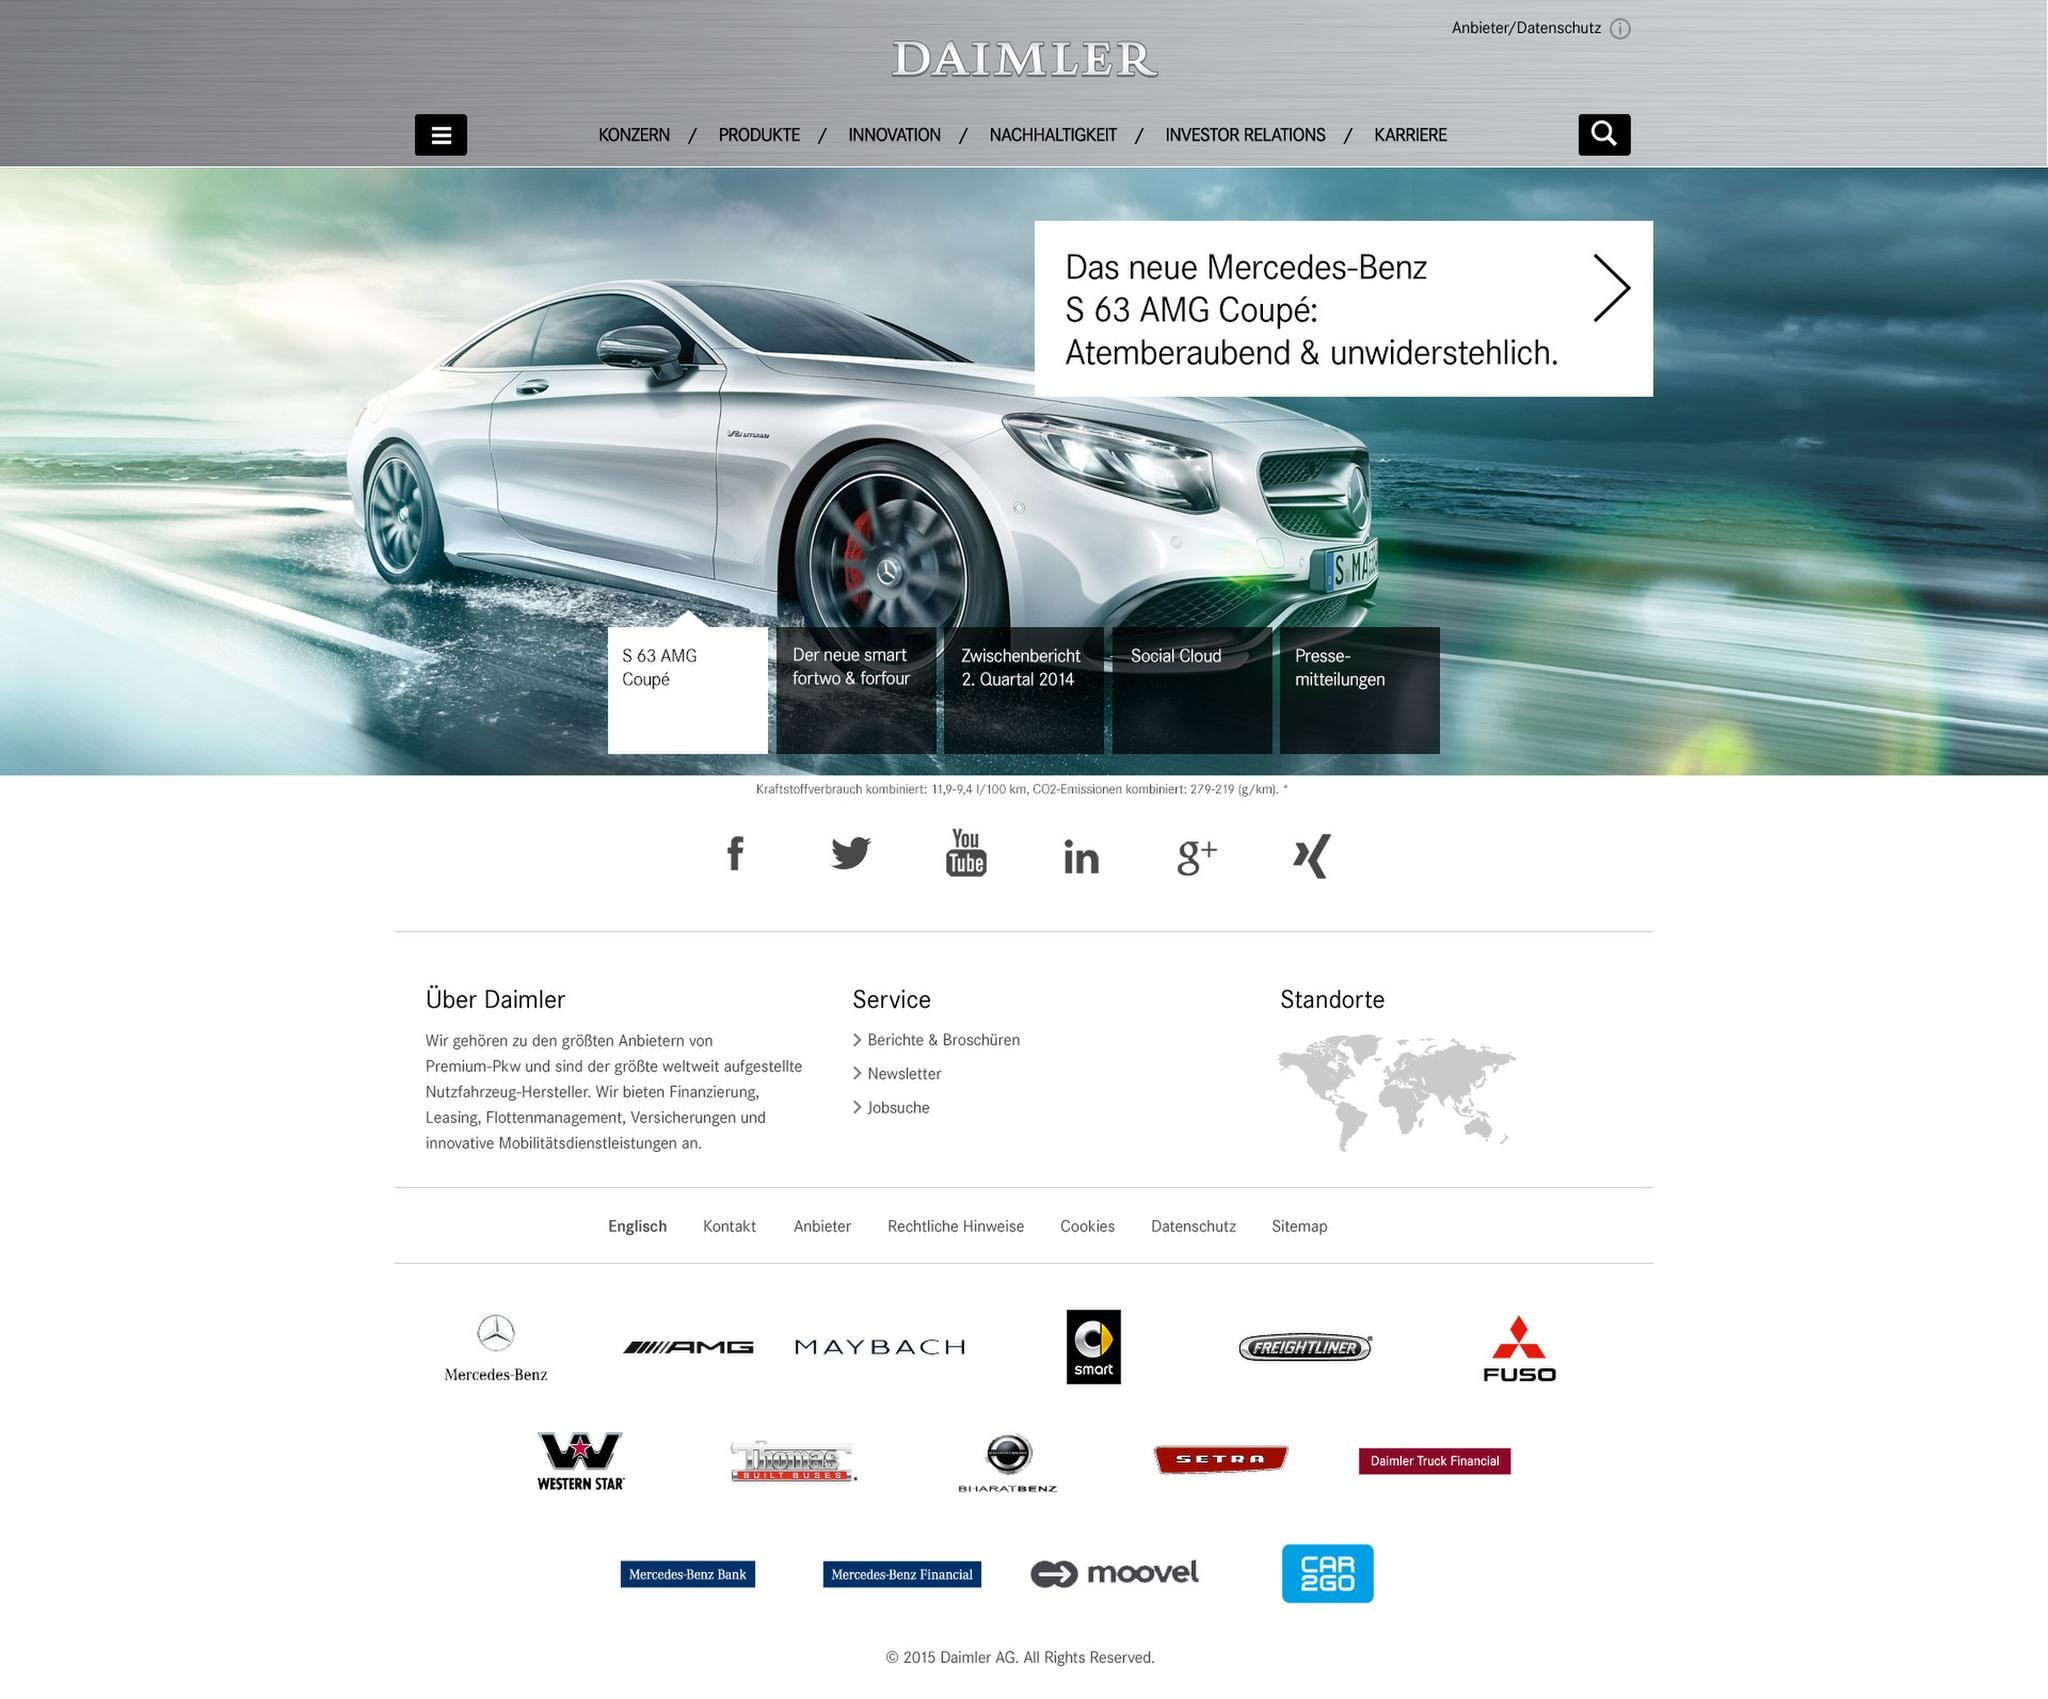 Daimler.com Relaunch